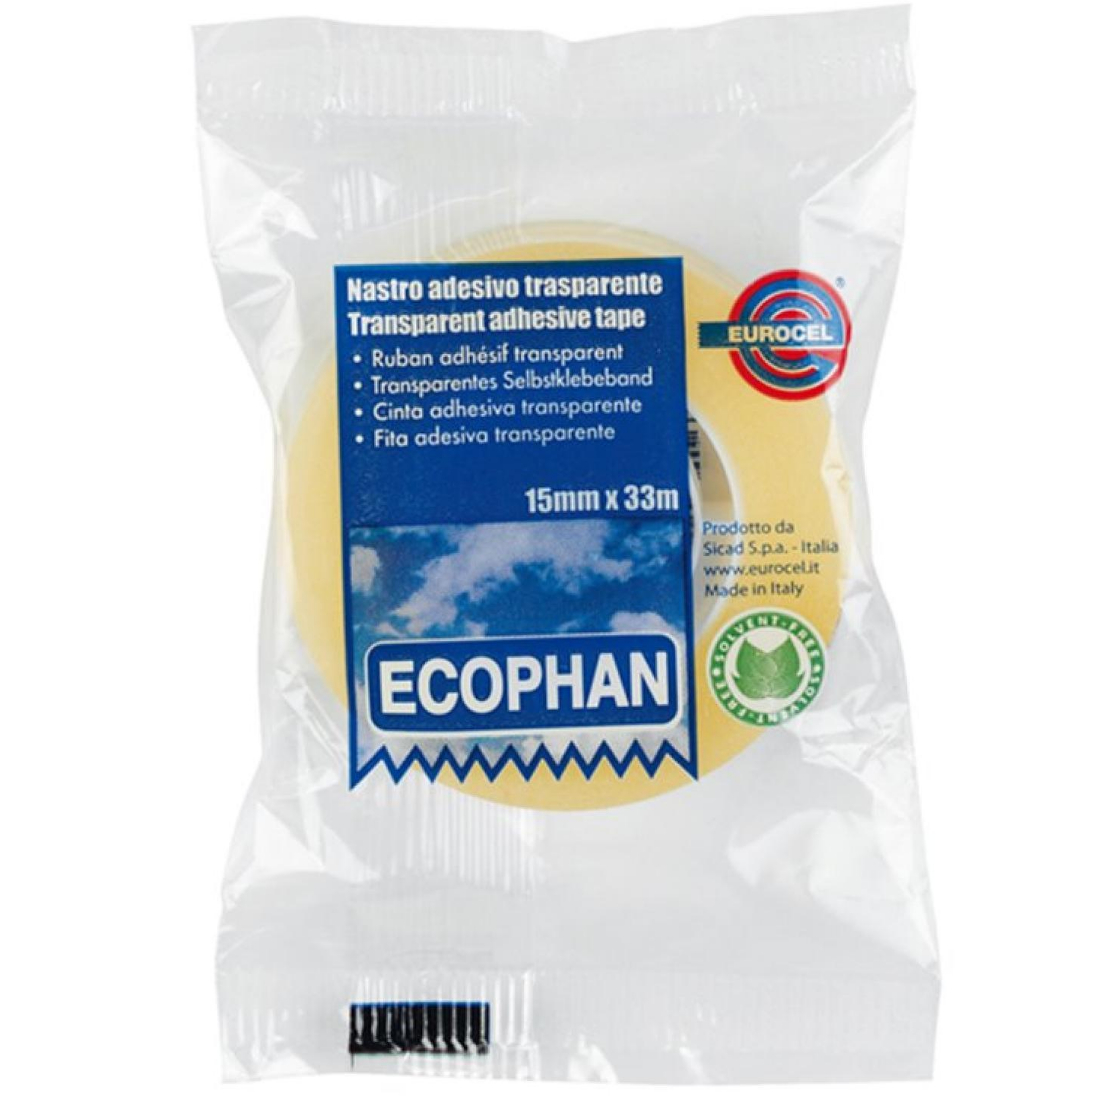 Fita Cola Ecophan eurocel